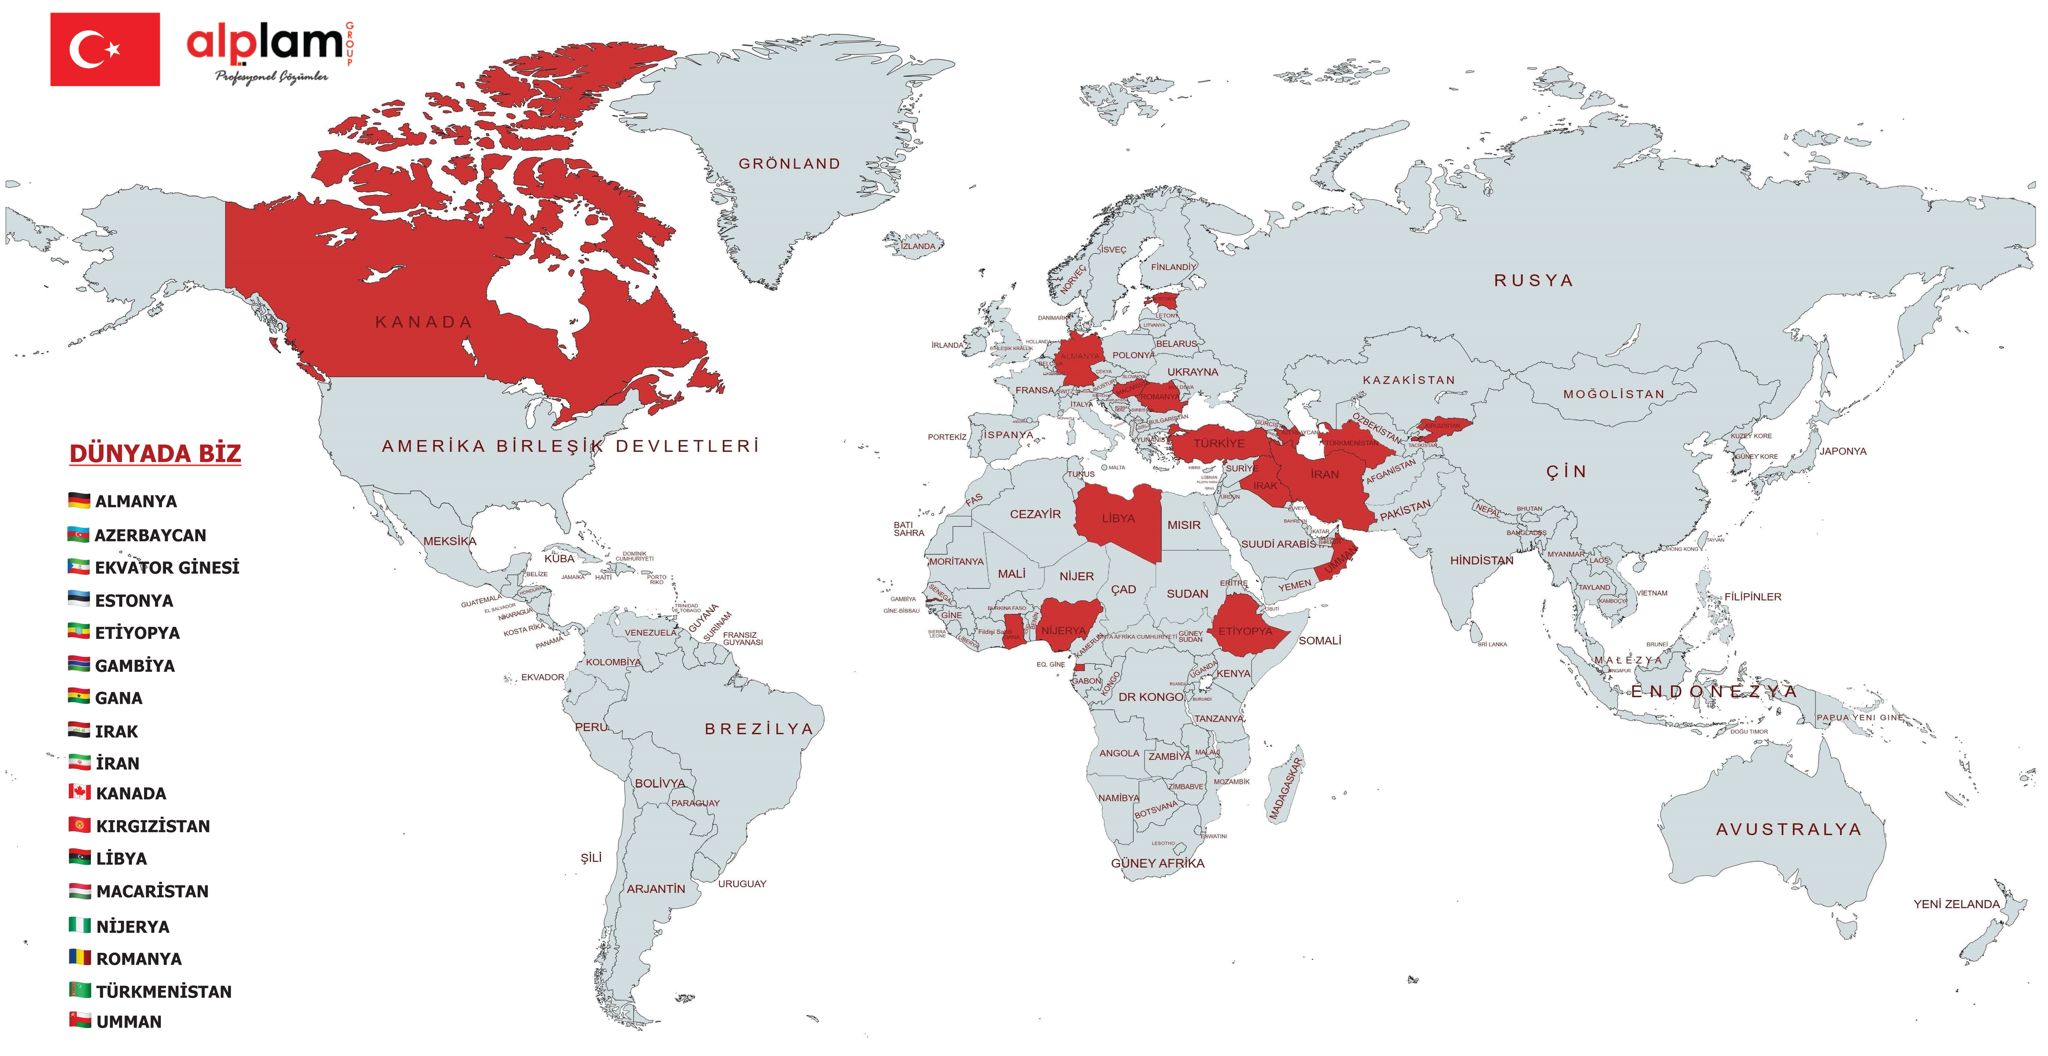 Dünya halitası üzerinde ihracat yapılan ülkeler